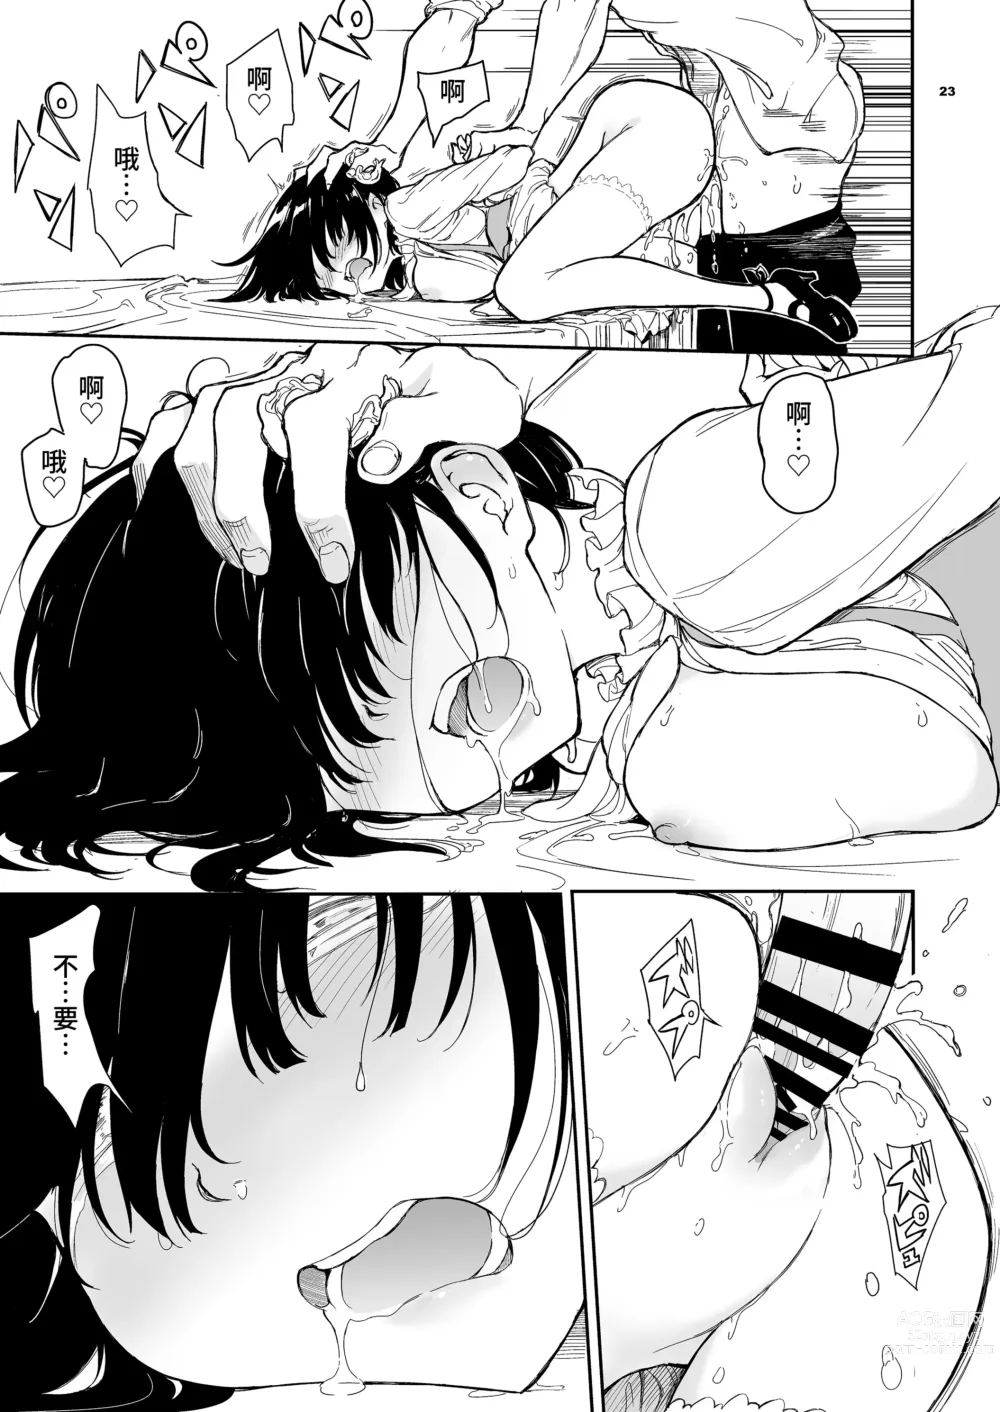 Page 23 of doujinshi Maid Kyouiku. 5 -Botsuraku Kizoku Rurikawa Tsubaki-